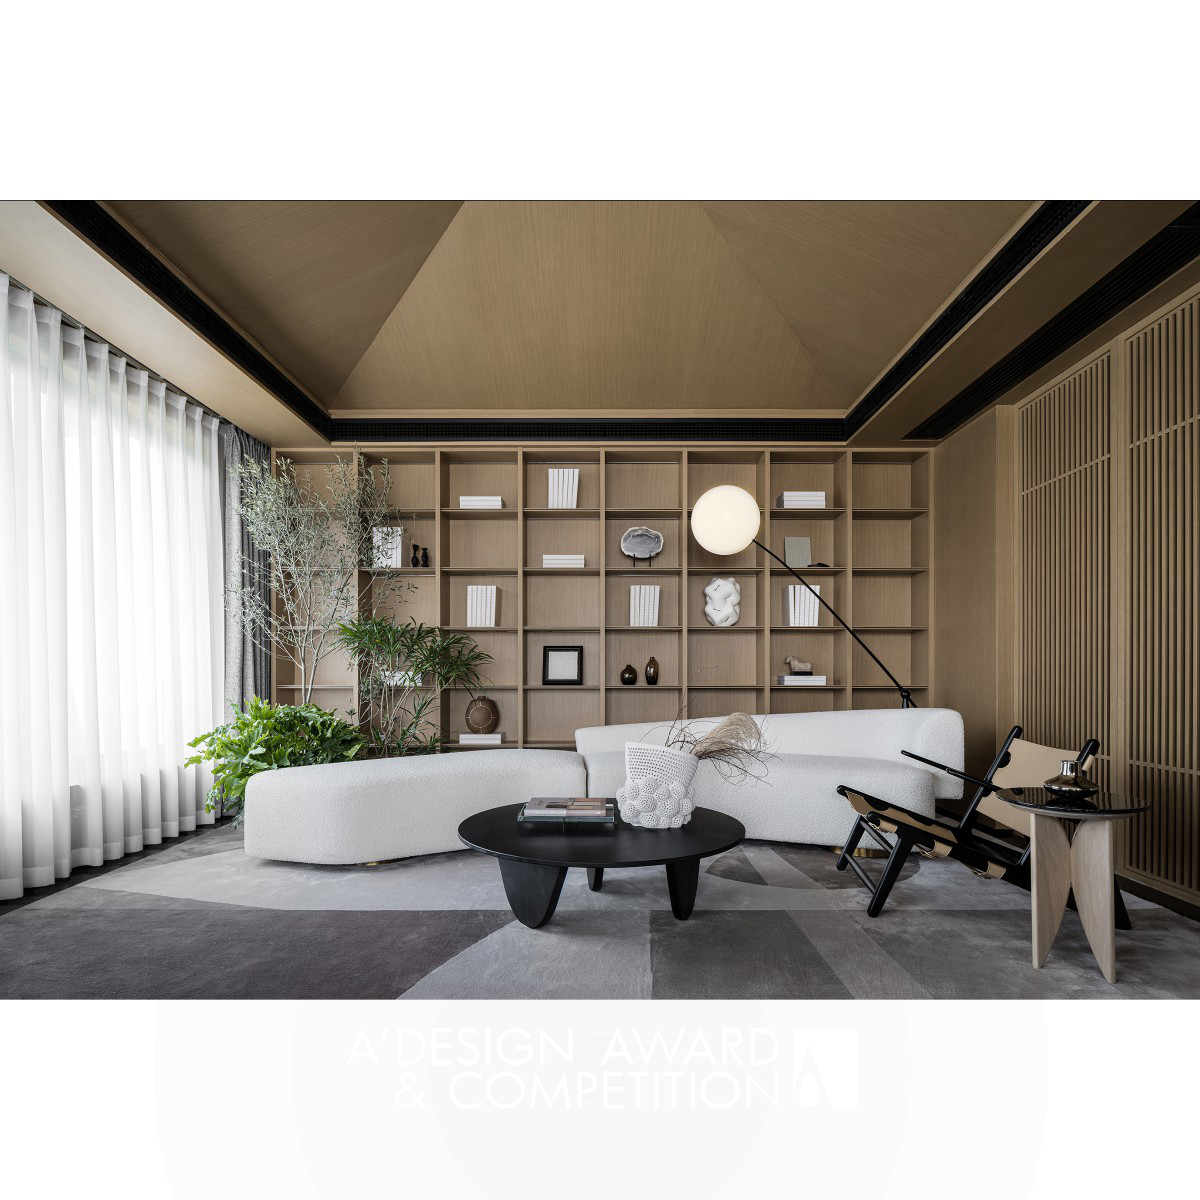 The Model House of Jinyu Bieyuan Residential by HANGZHOU POSH SPACE DESIGN CO.,LTD